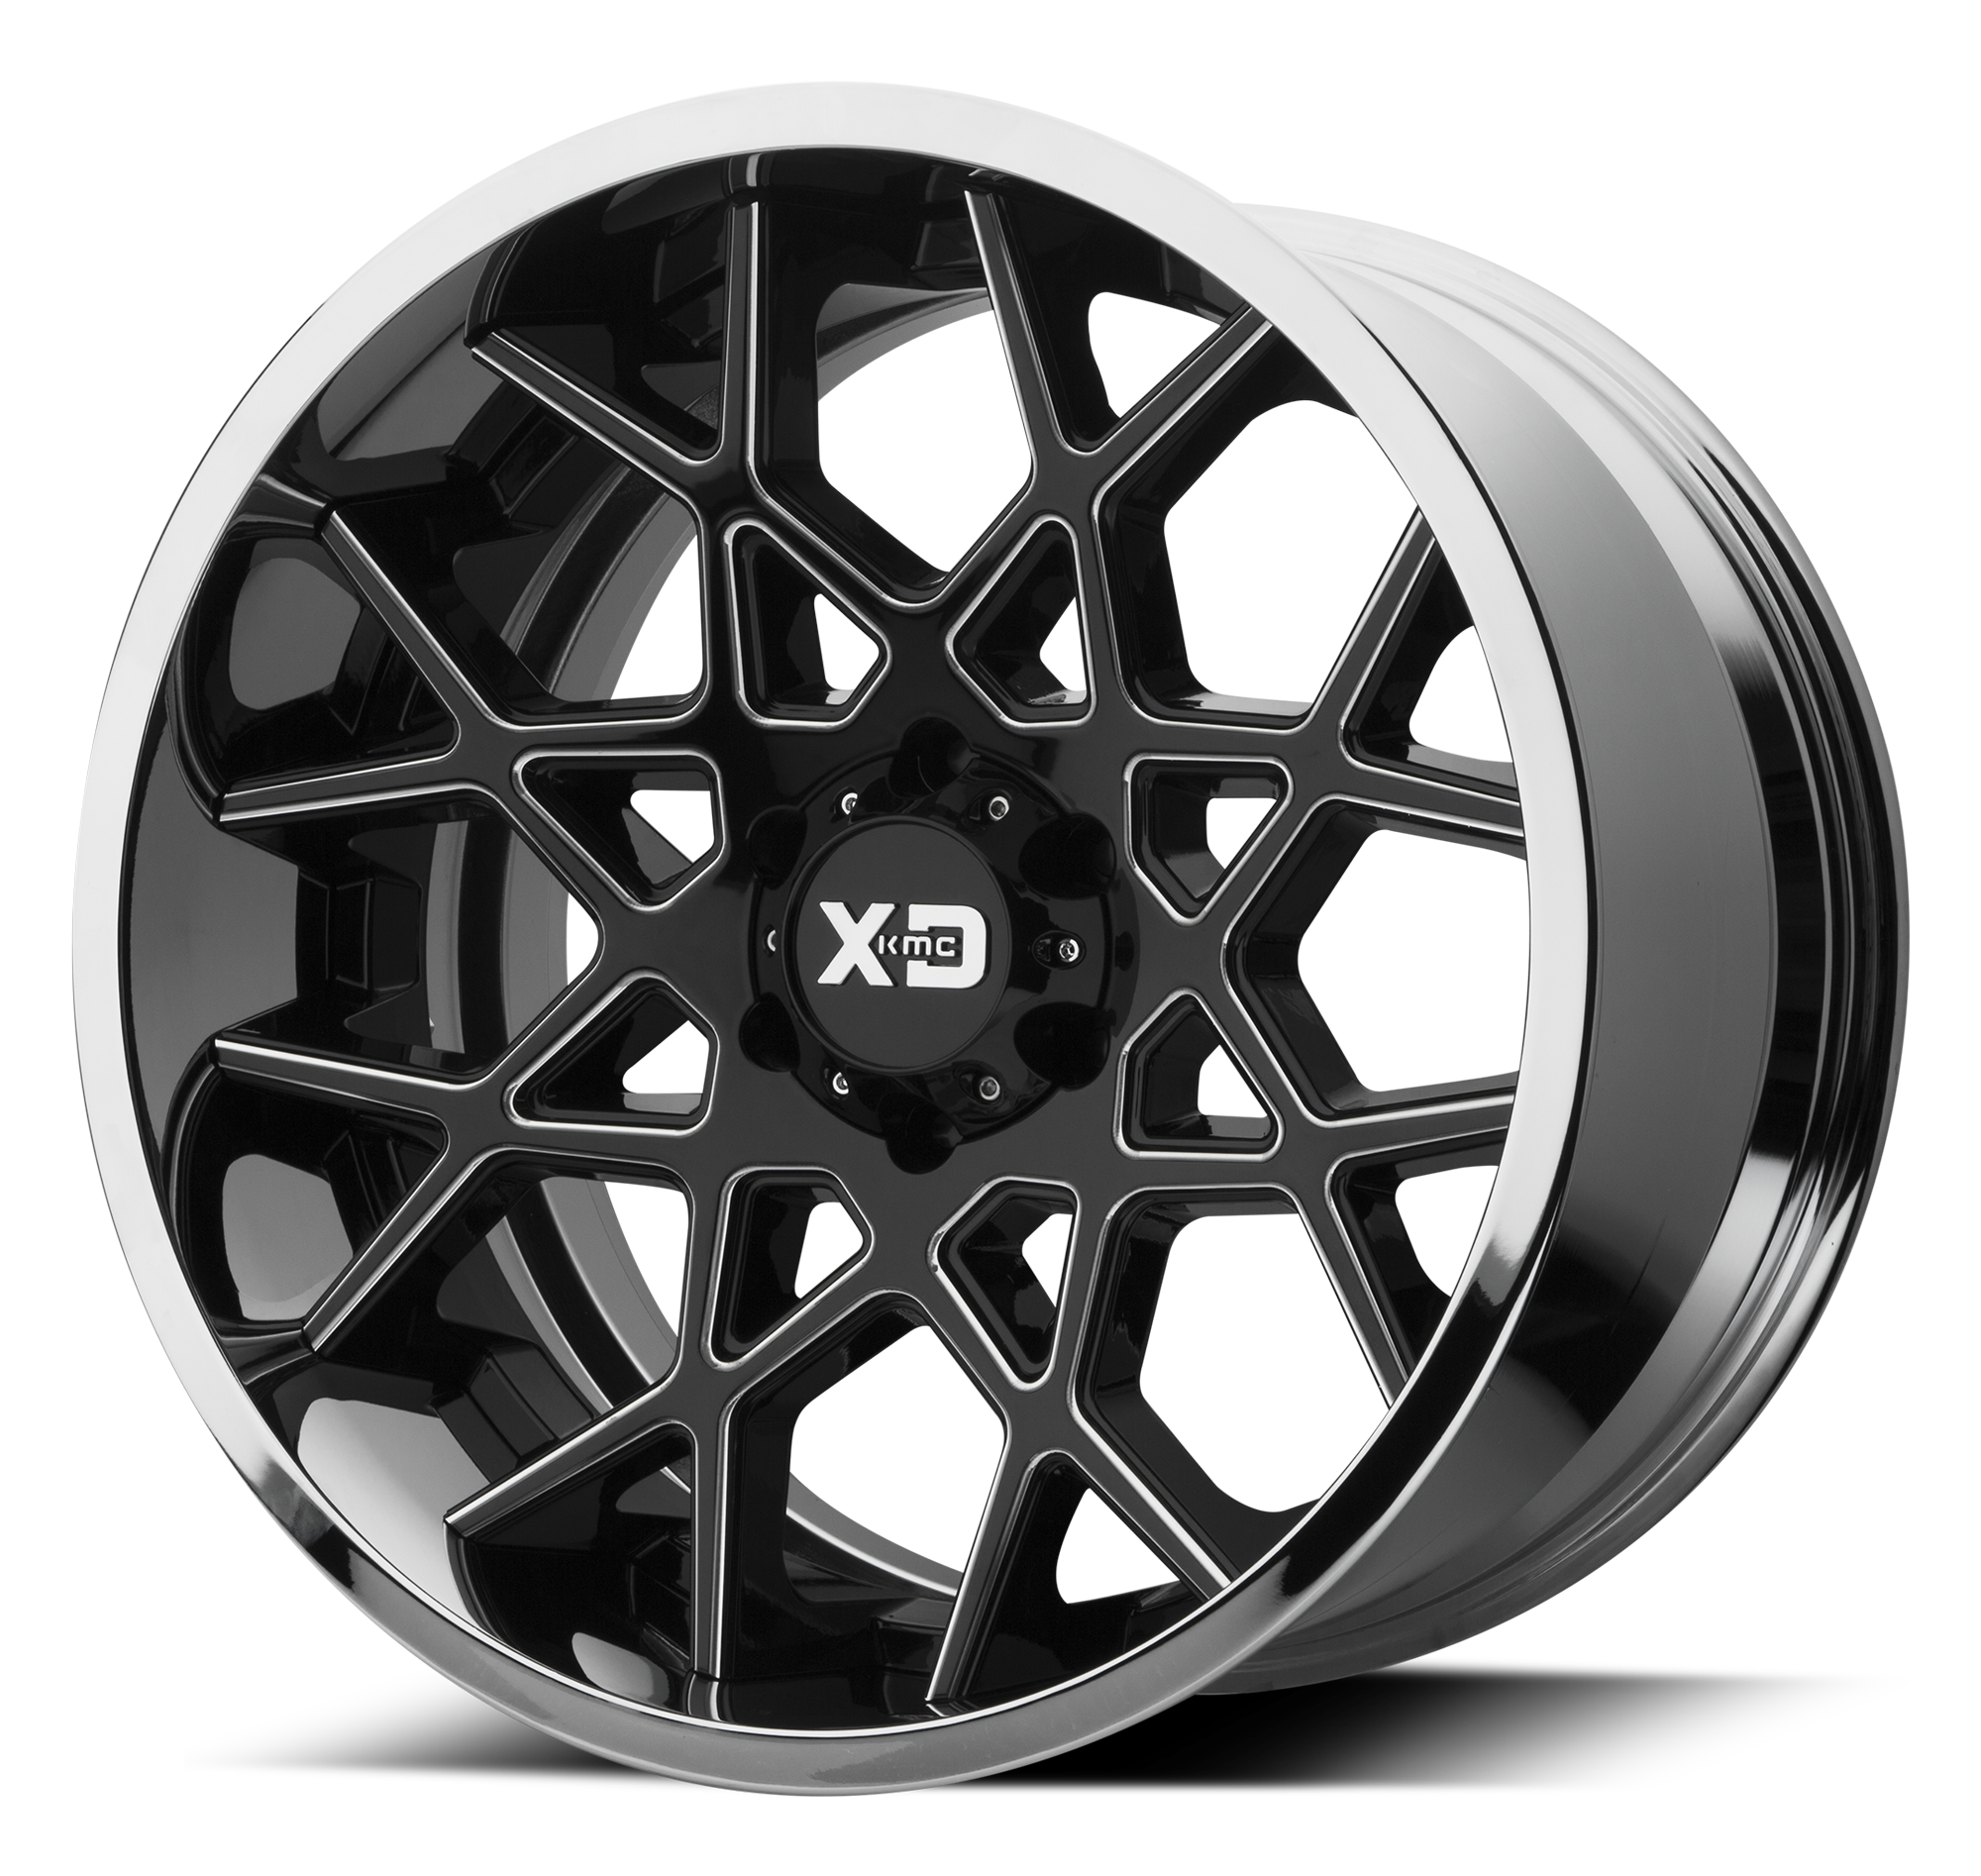 Xd колеса. KMC XD Wheels. Диски KMC XD Series. Литые диски XD. Литые диски XD Series.